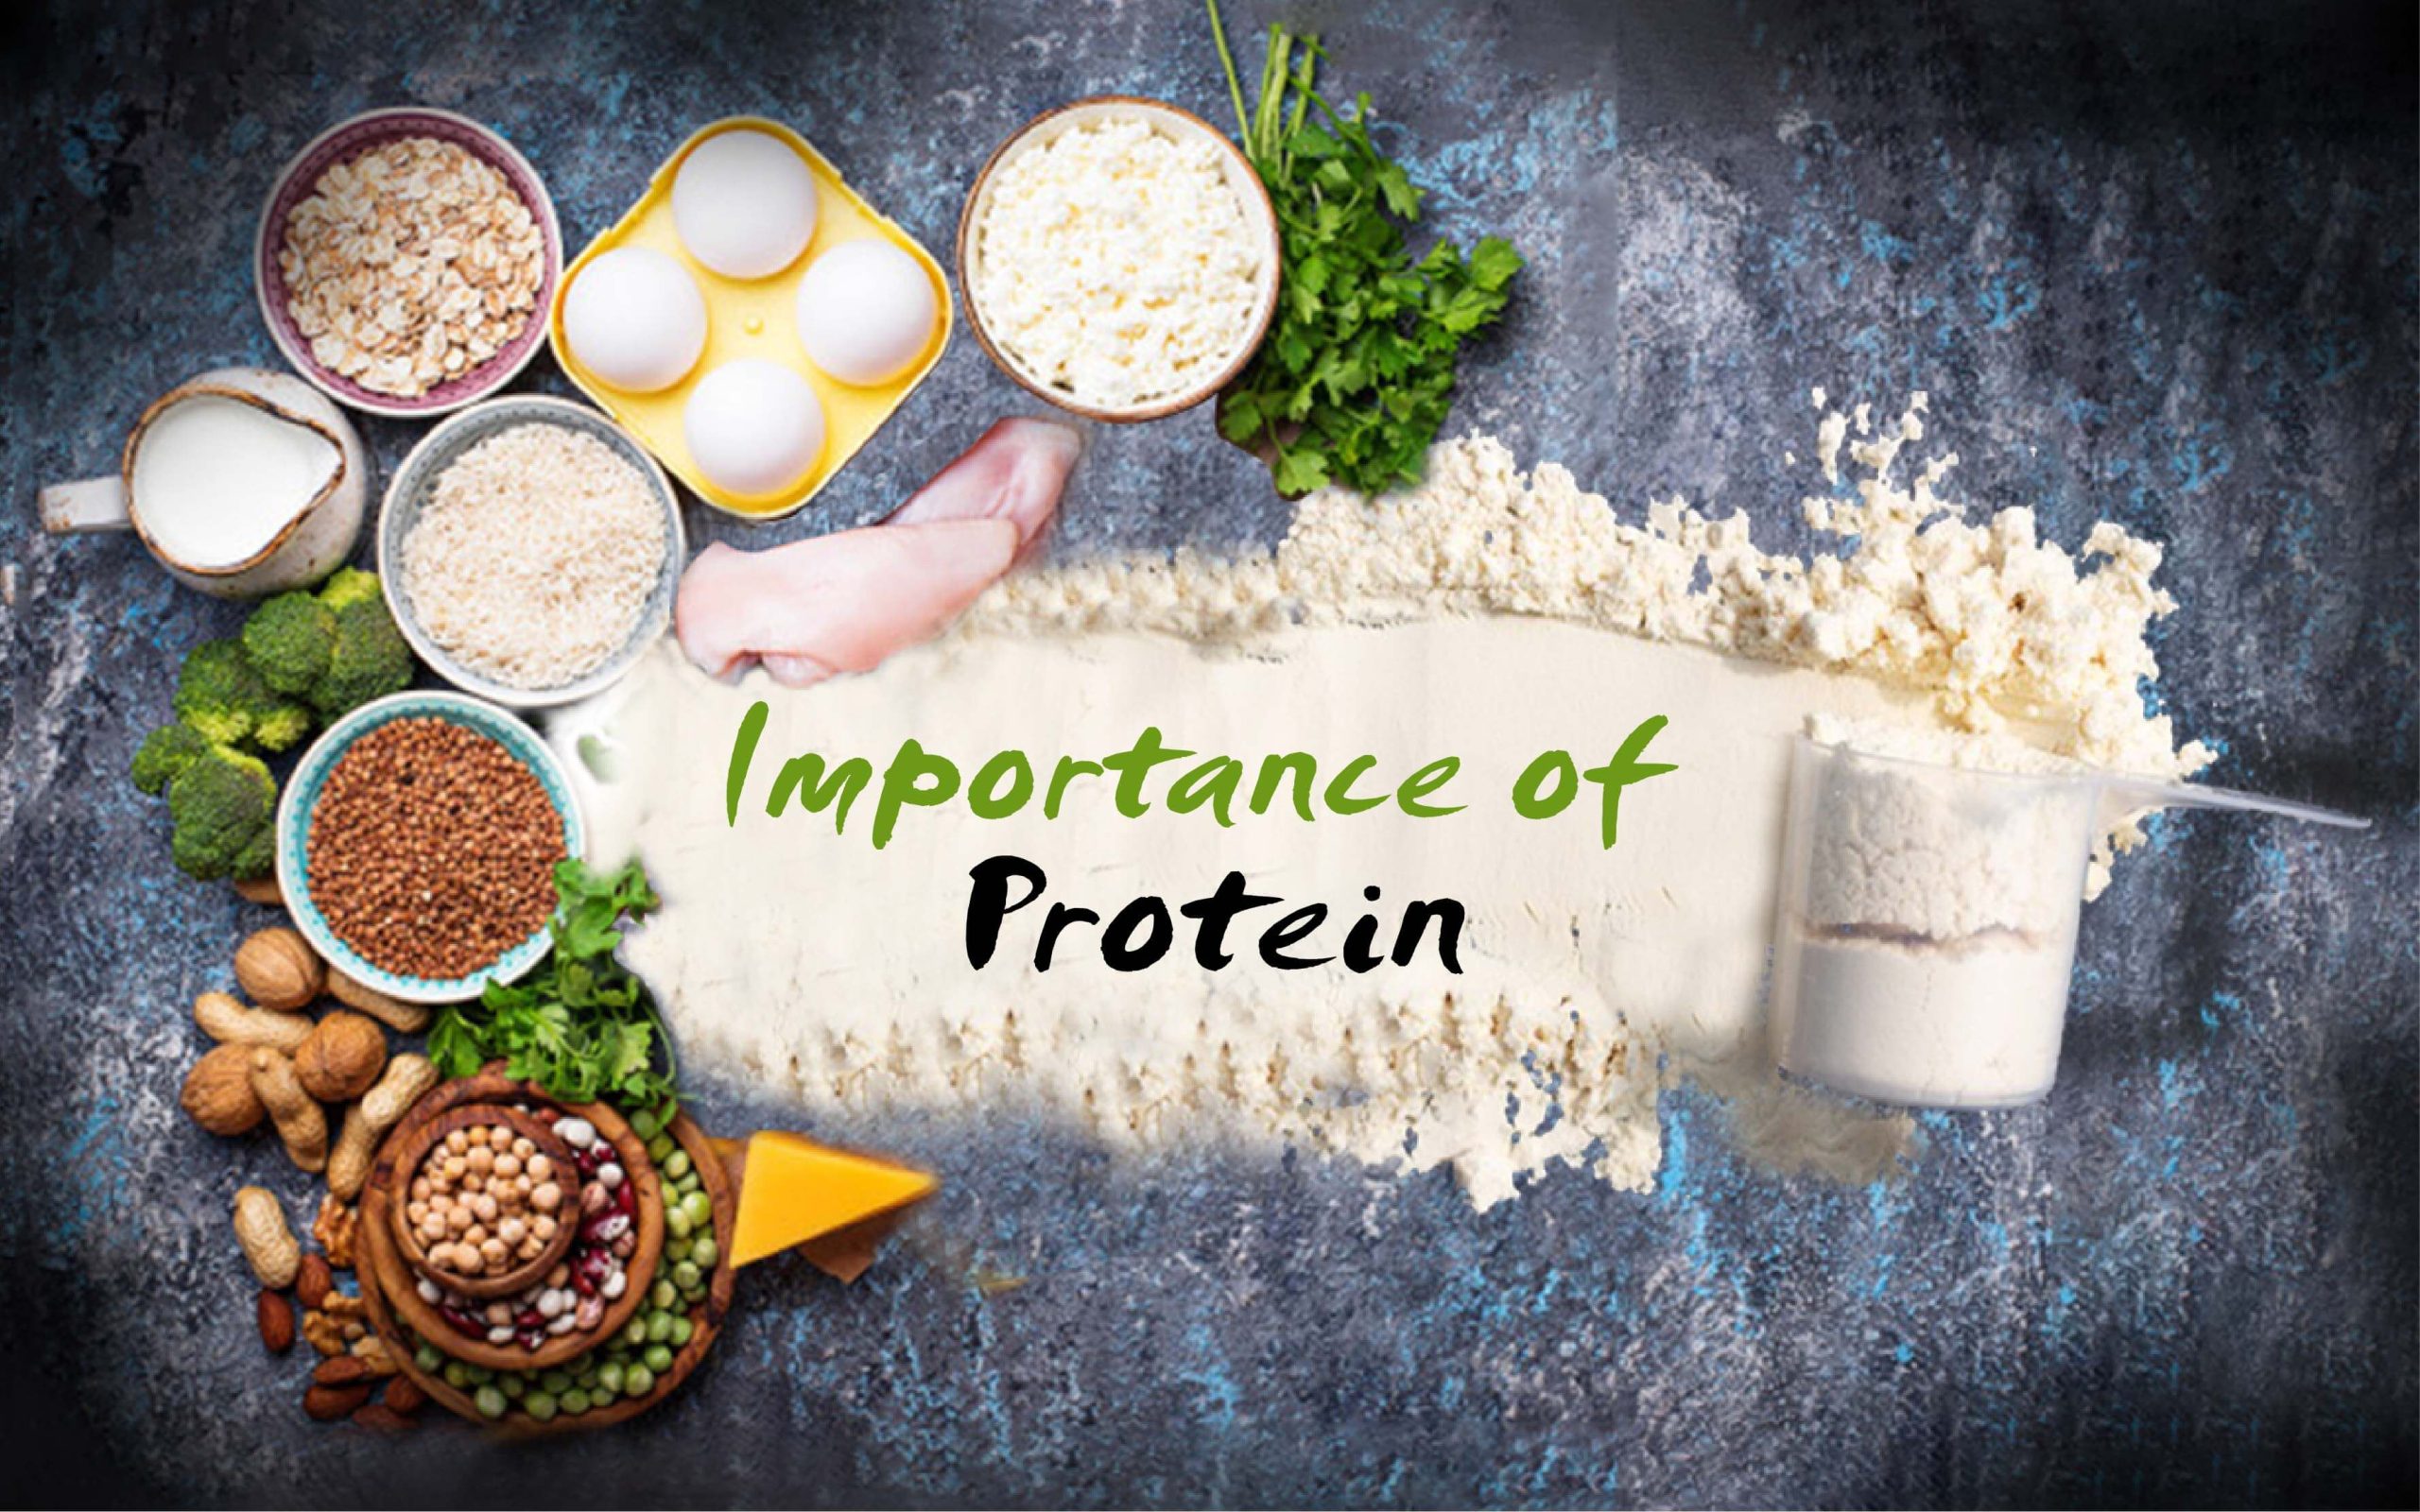 Benefits of Protein powder